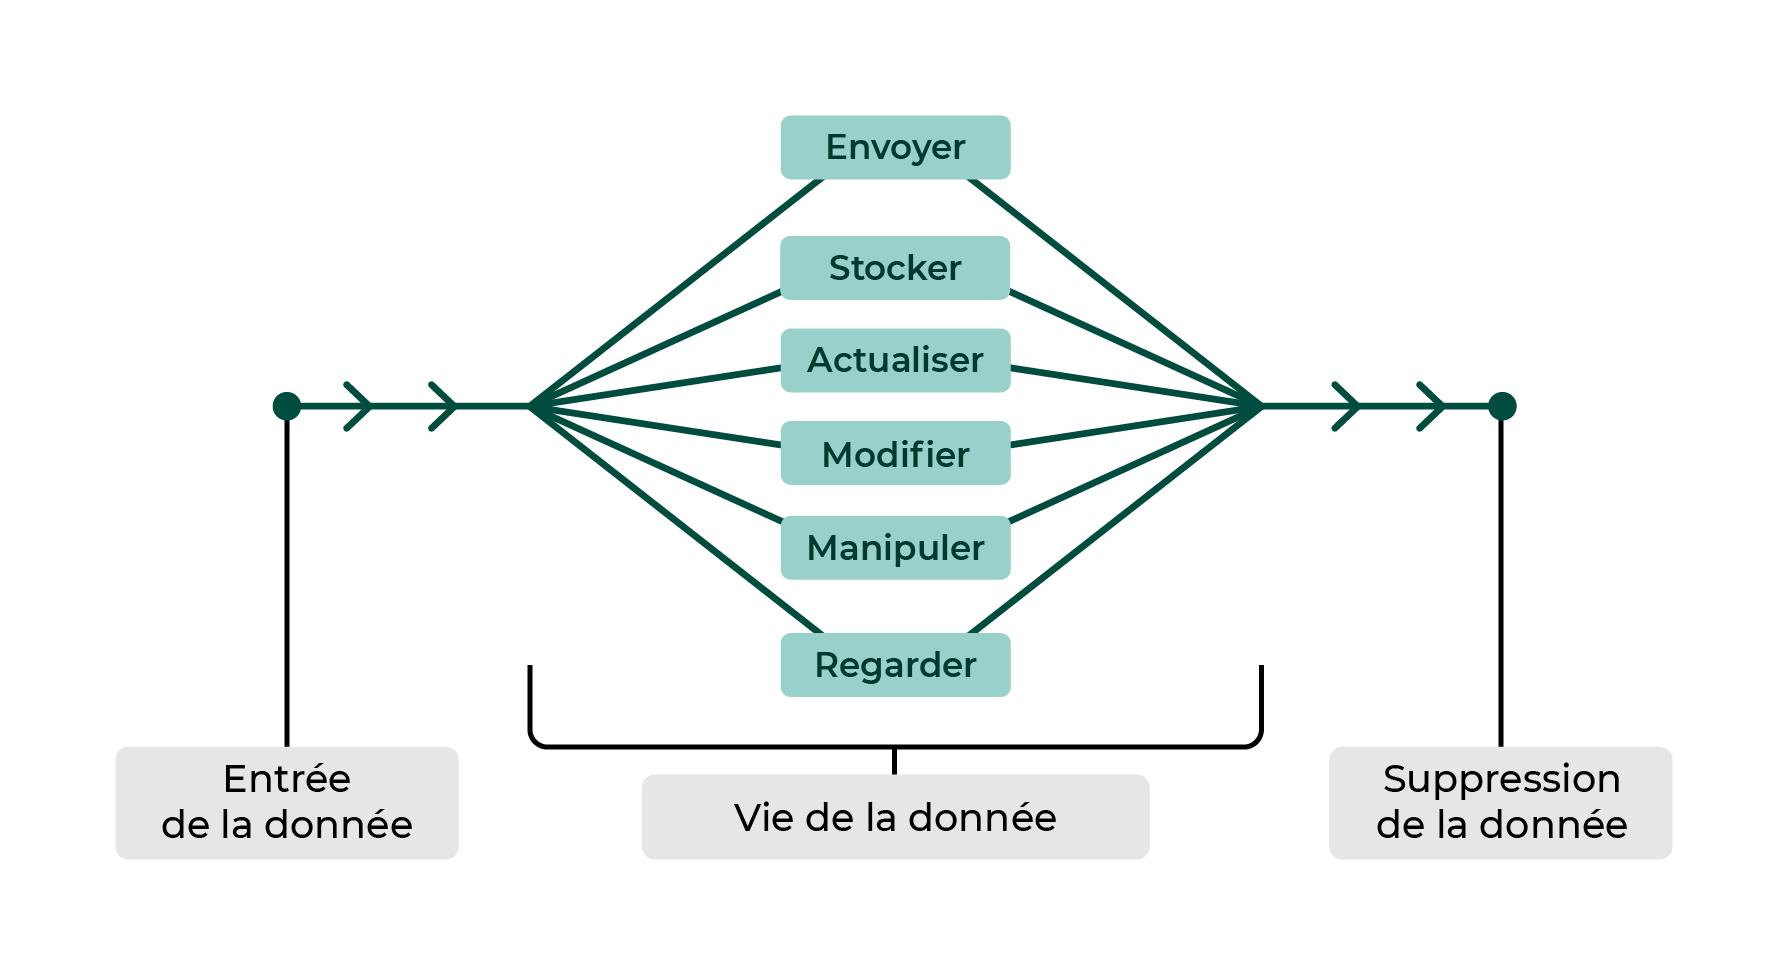 Ce diagramme montre les 3 étapes de la vie de la donnée. L'entrée, la vie et la suppression.